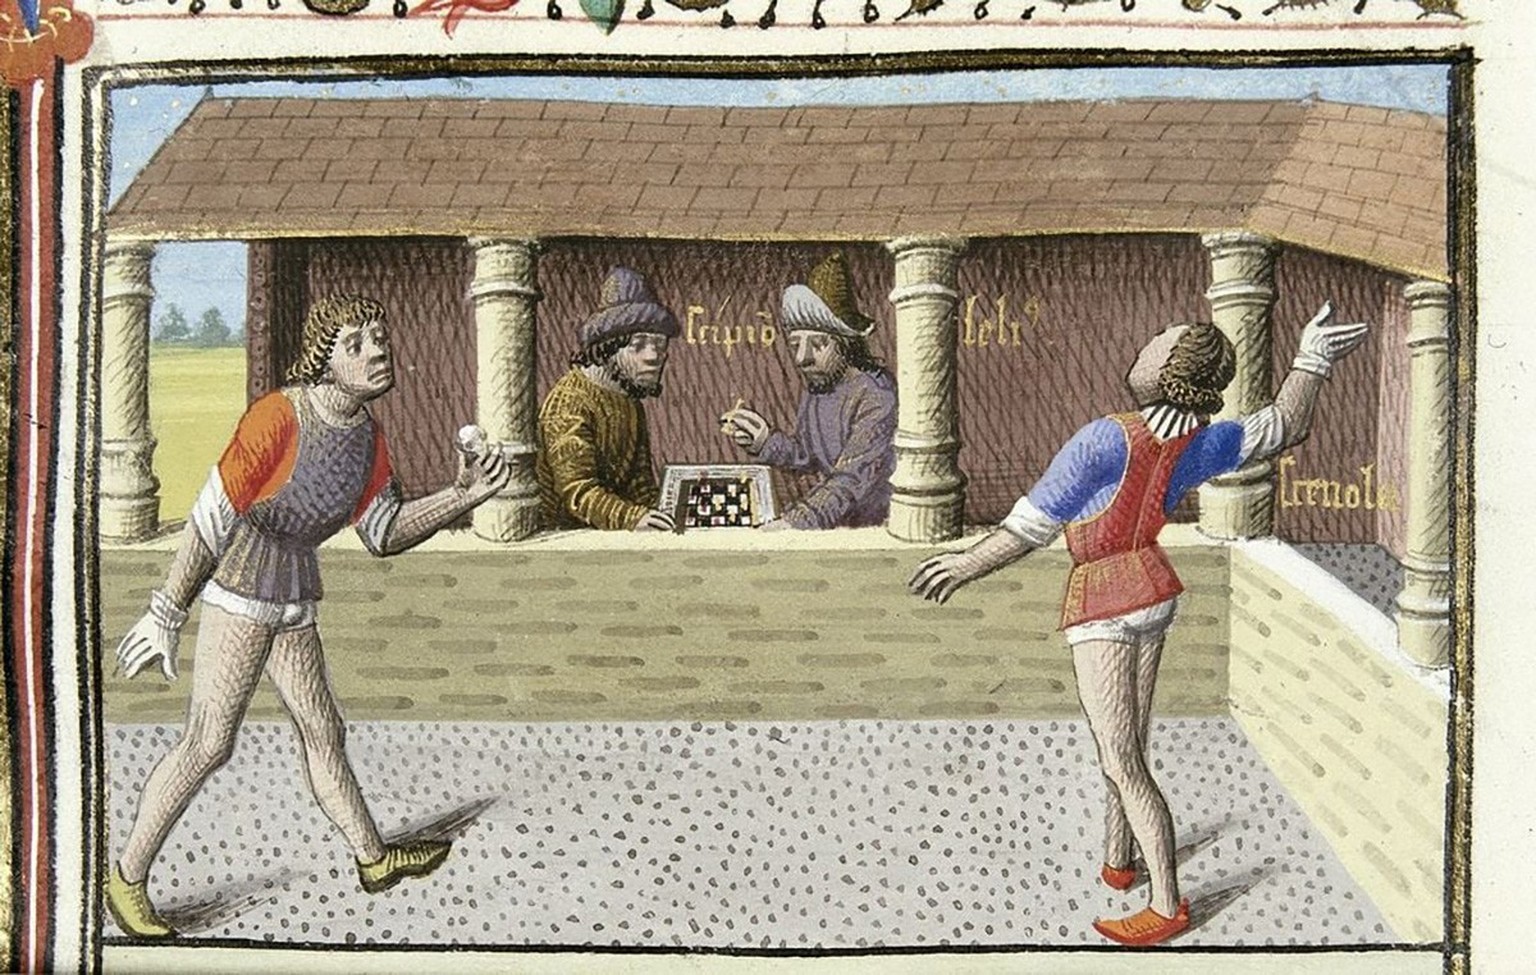 Représentation d’un jeu de balle médiéval dans un manuscrit français du XIVe siècle. Une partie d’échecs est disputée à l’arrière-plan.
https://commons.wikimedia.org/wiki/File:Medieval_Tennis.jpg